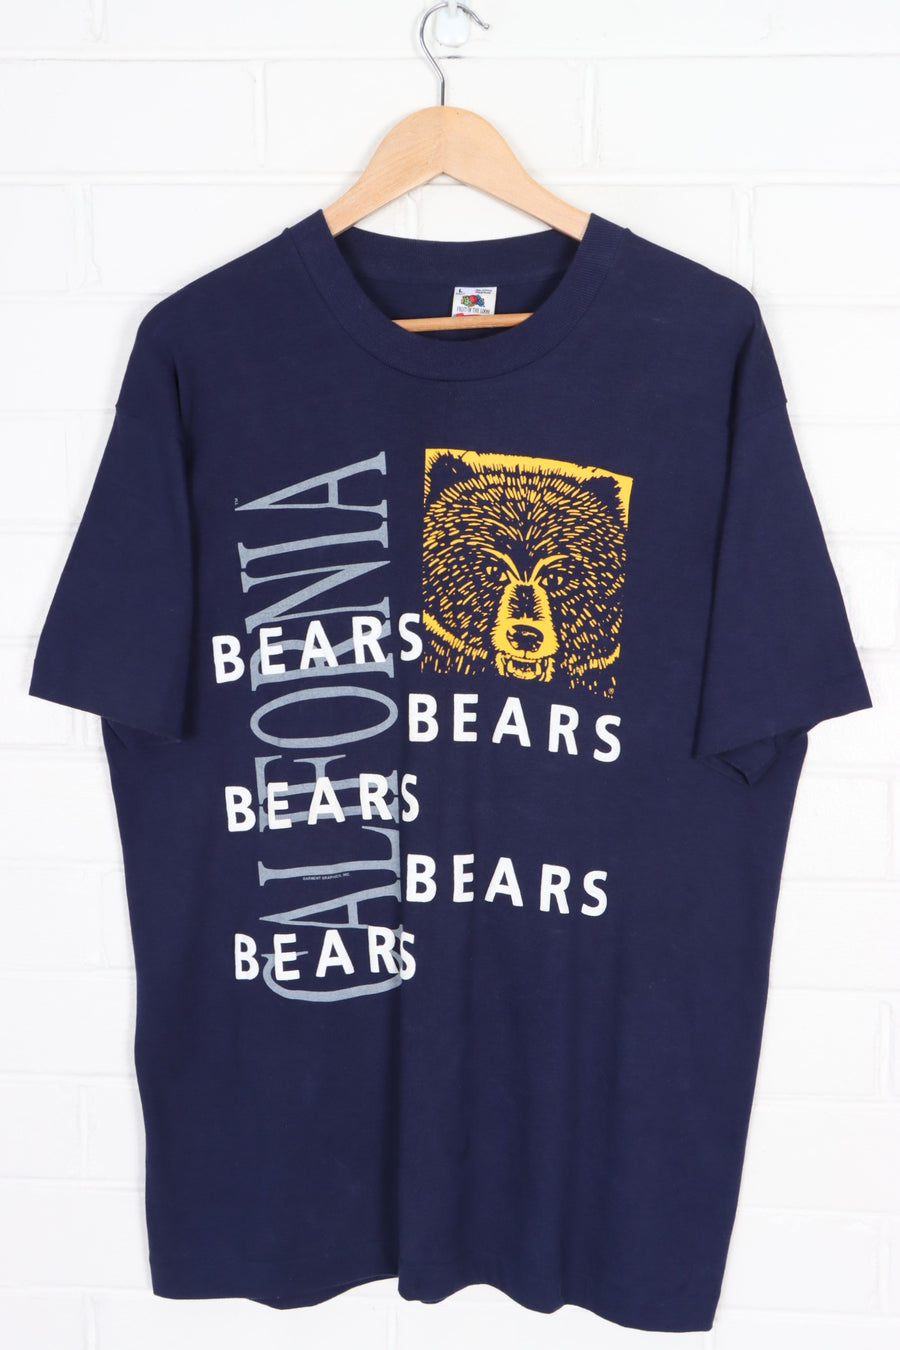 Carolina Bears Puff Print Single Stitch T-Shirt USA Made (L)